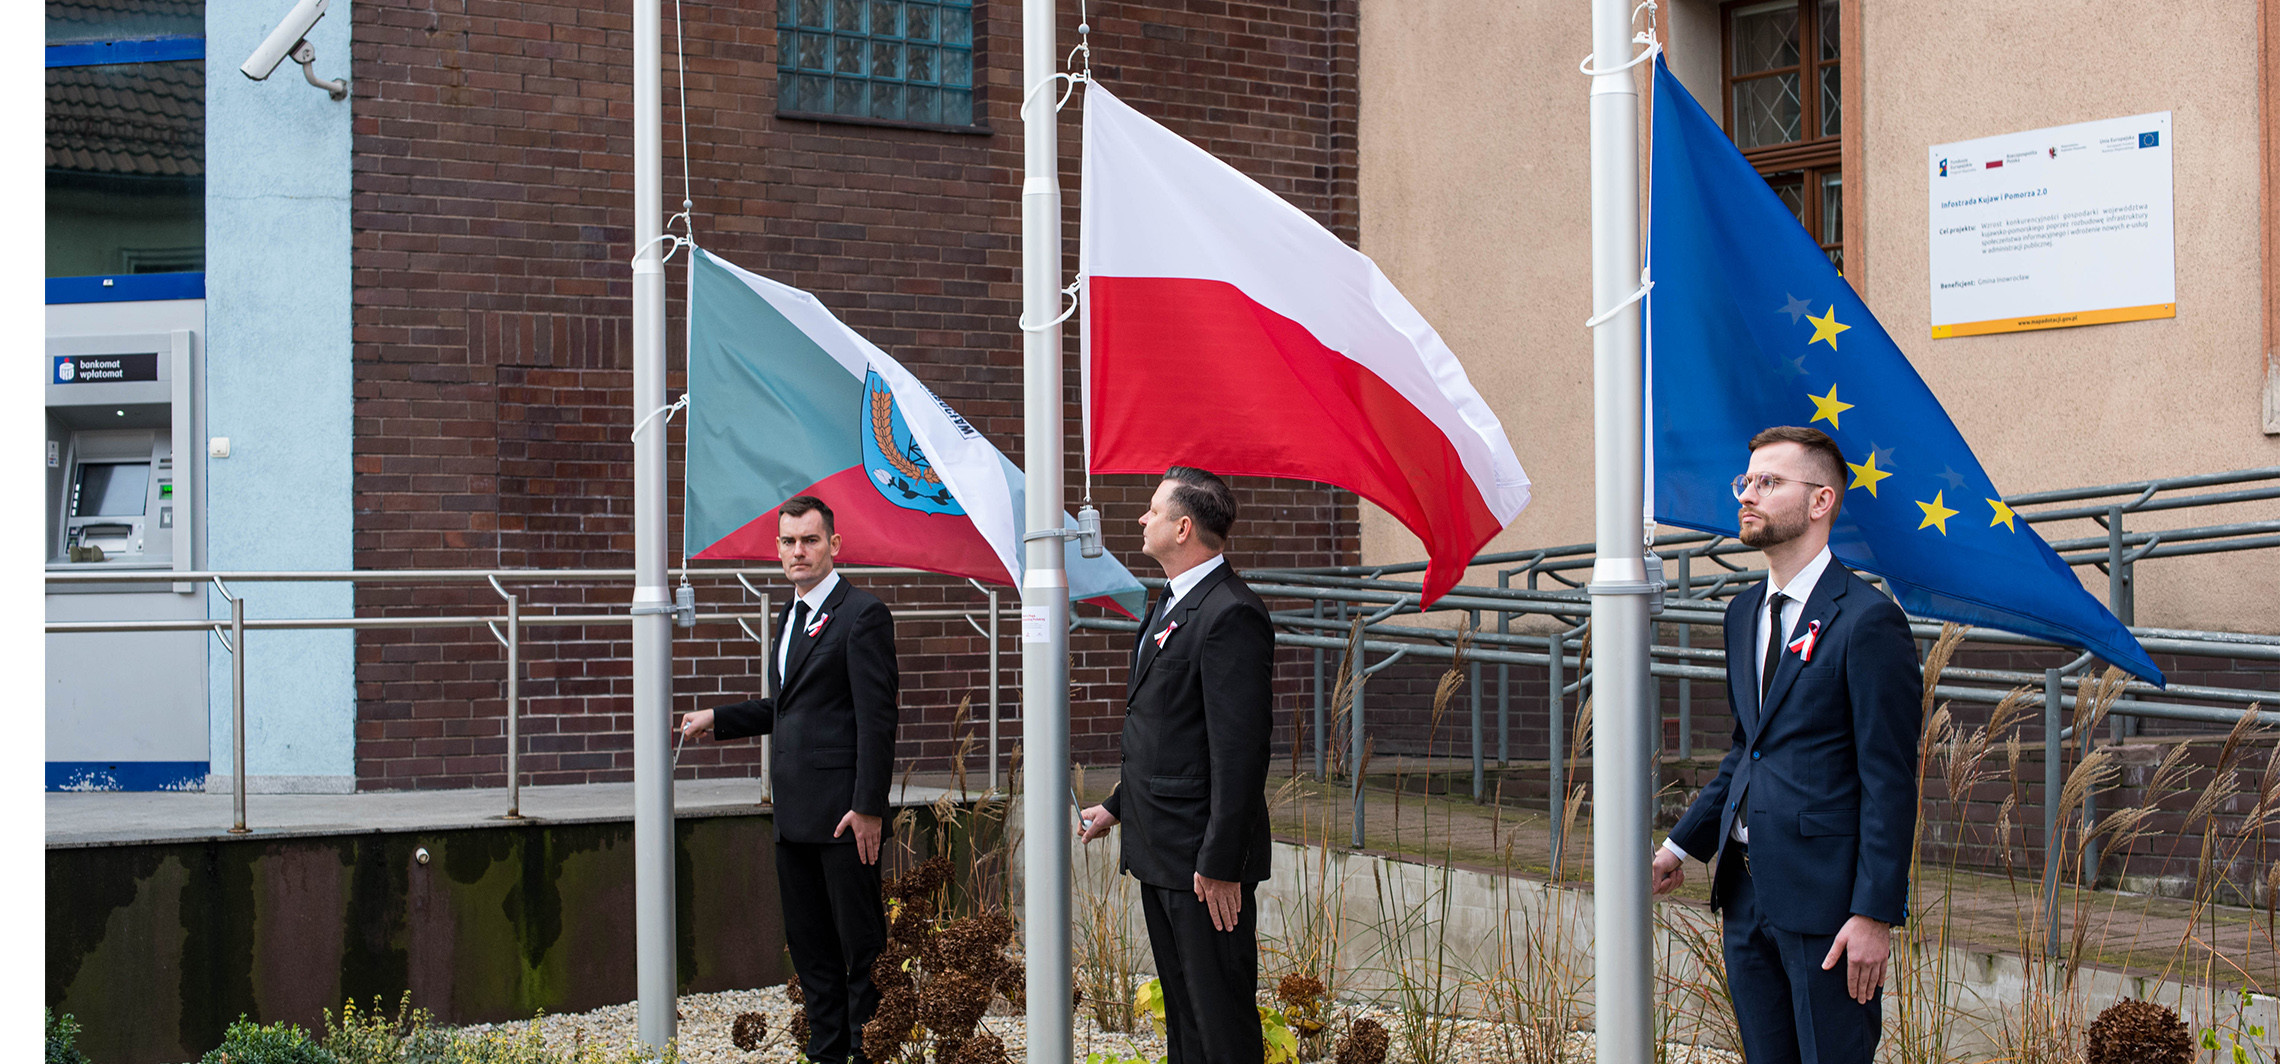 Inowrocław - Przy ul. Królowej Jadwigi stanęły trzy maszty flagowe